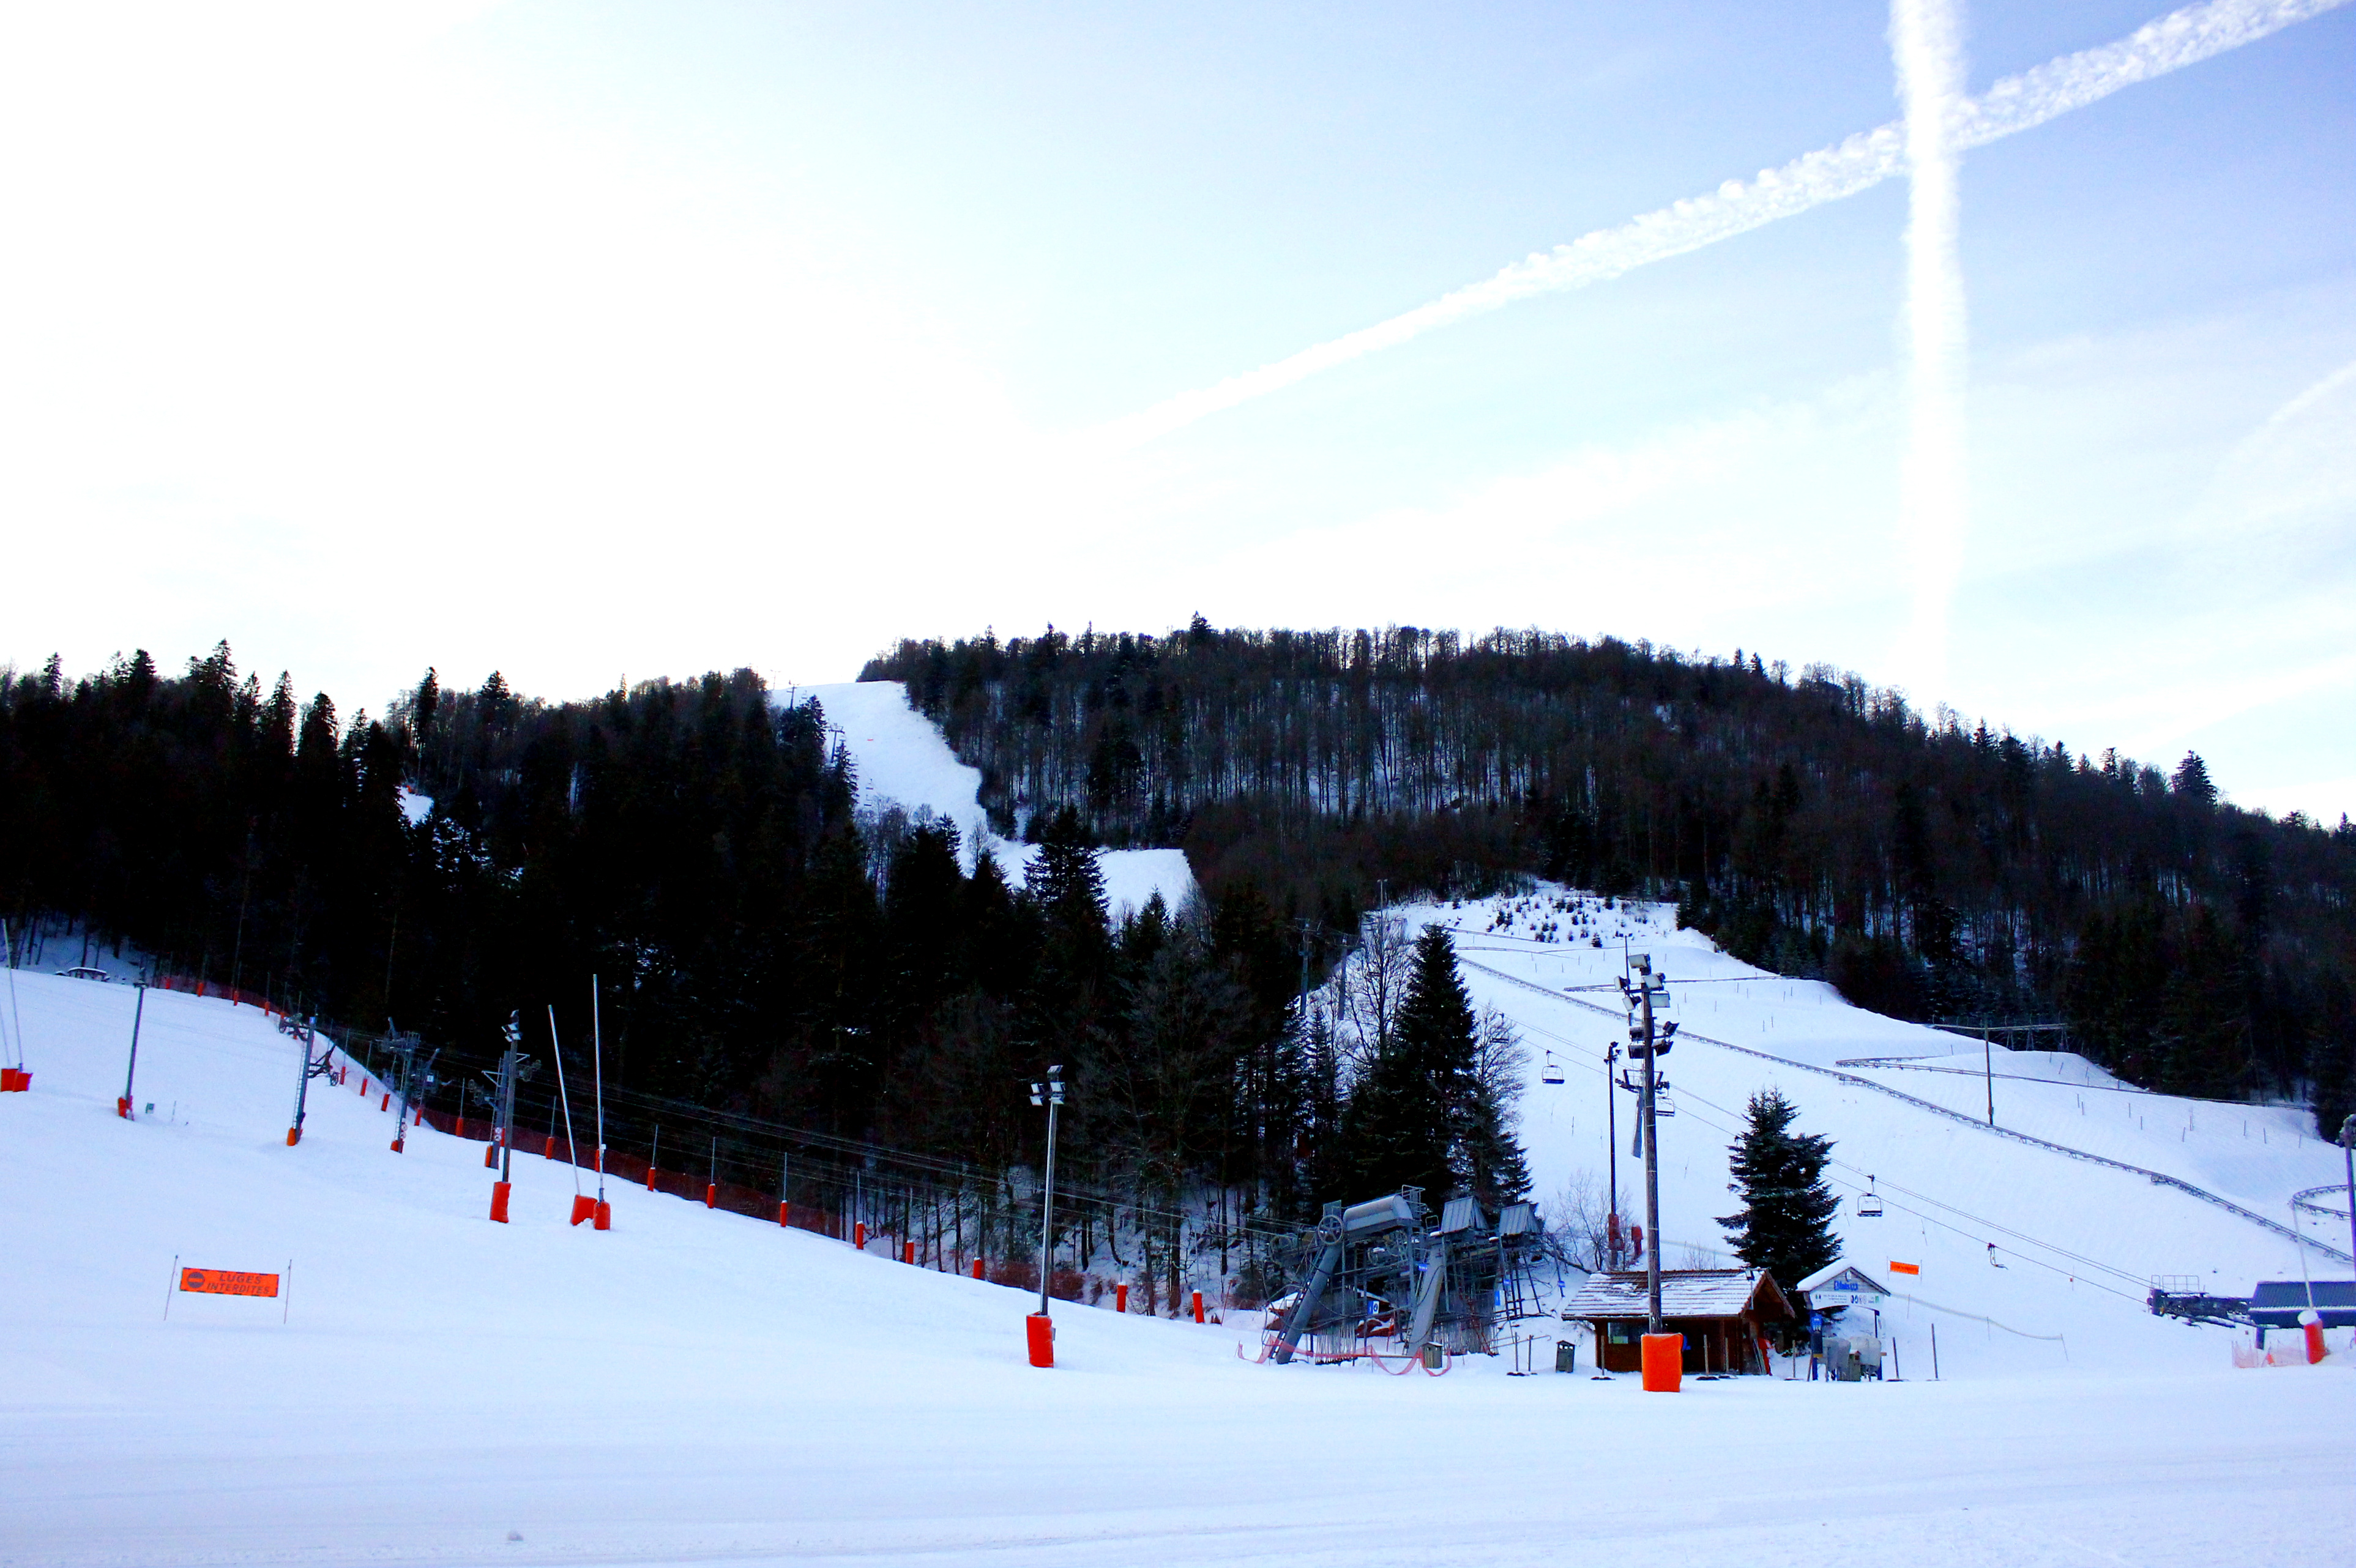 Station de ski alpin : la Bresse dans les Vosges